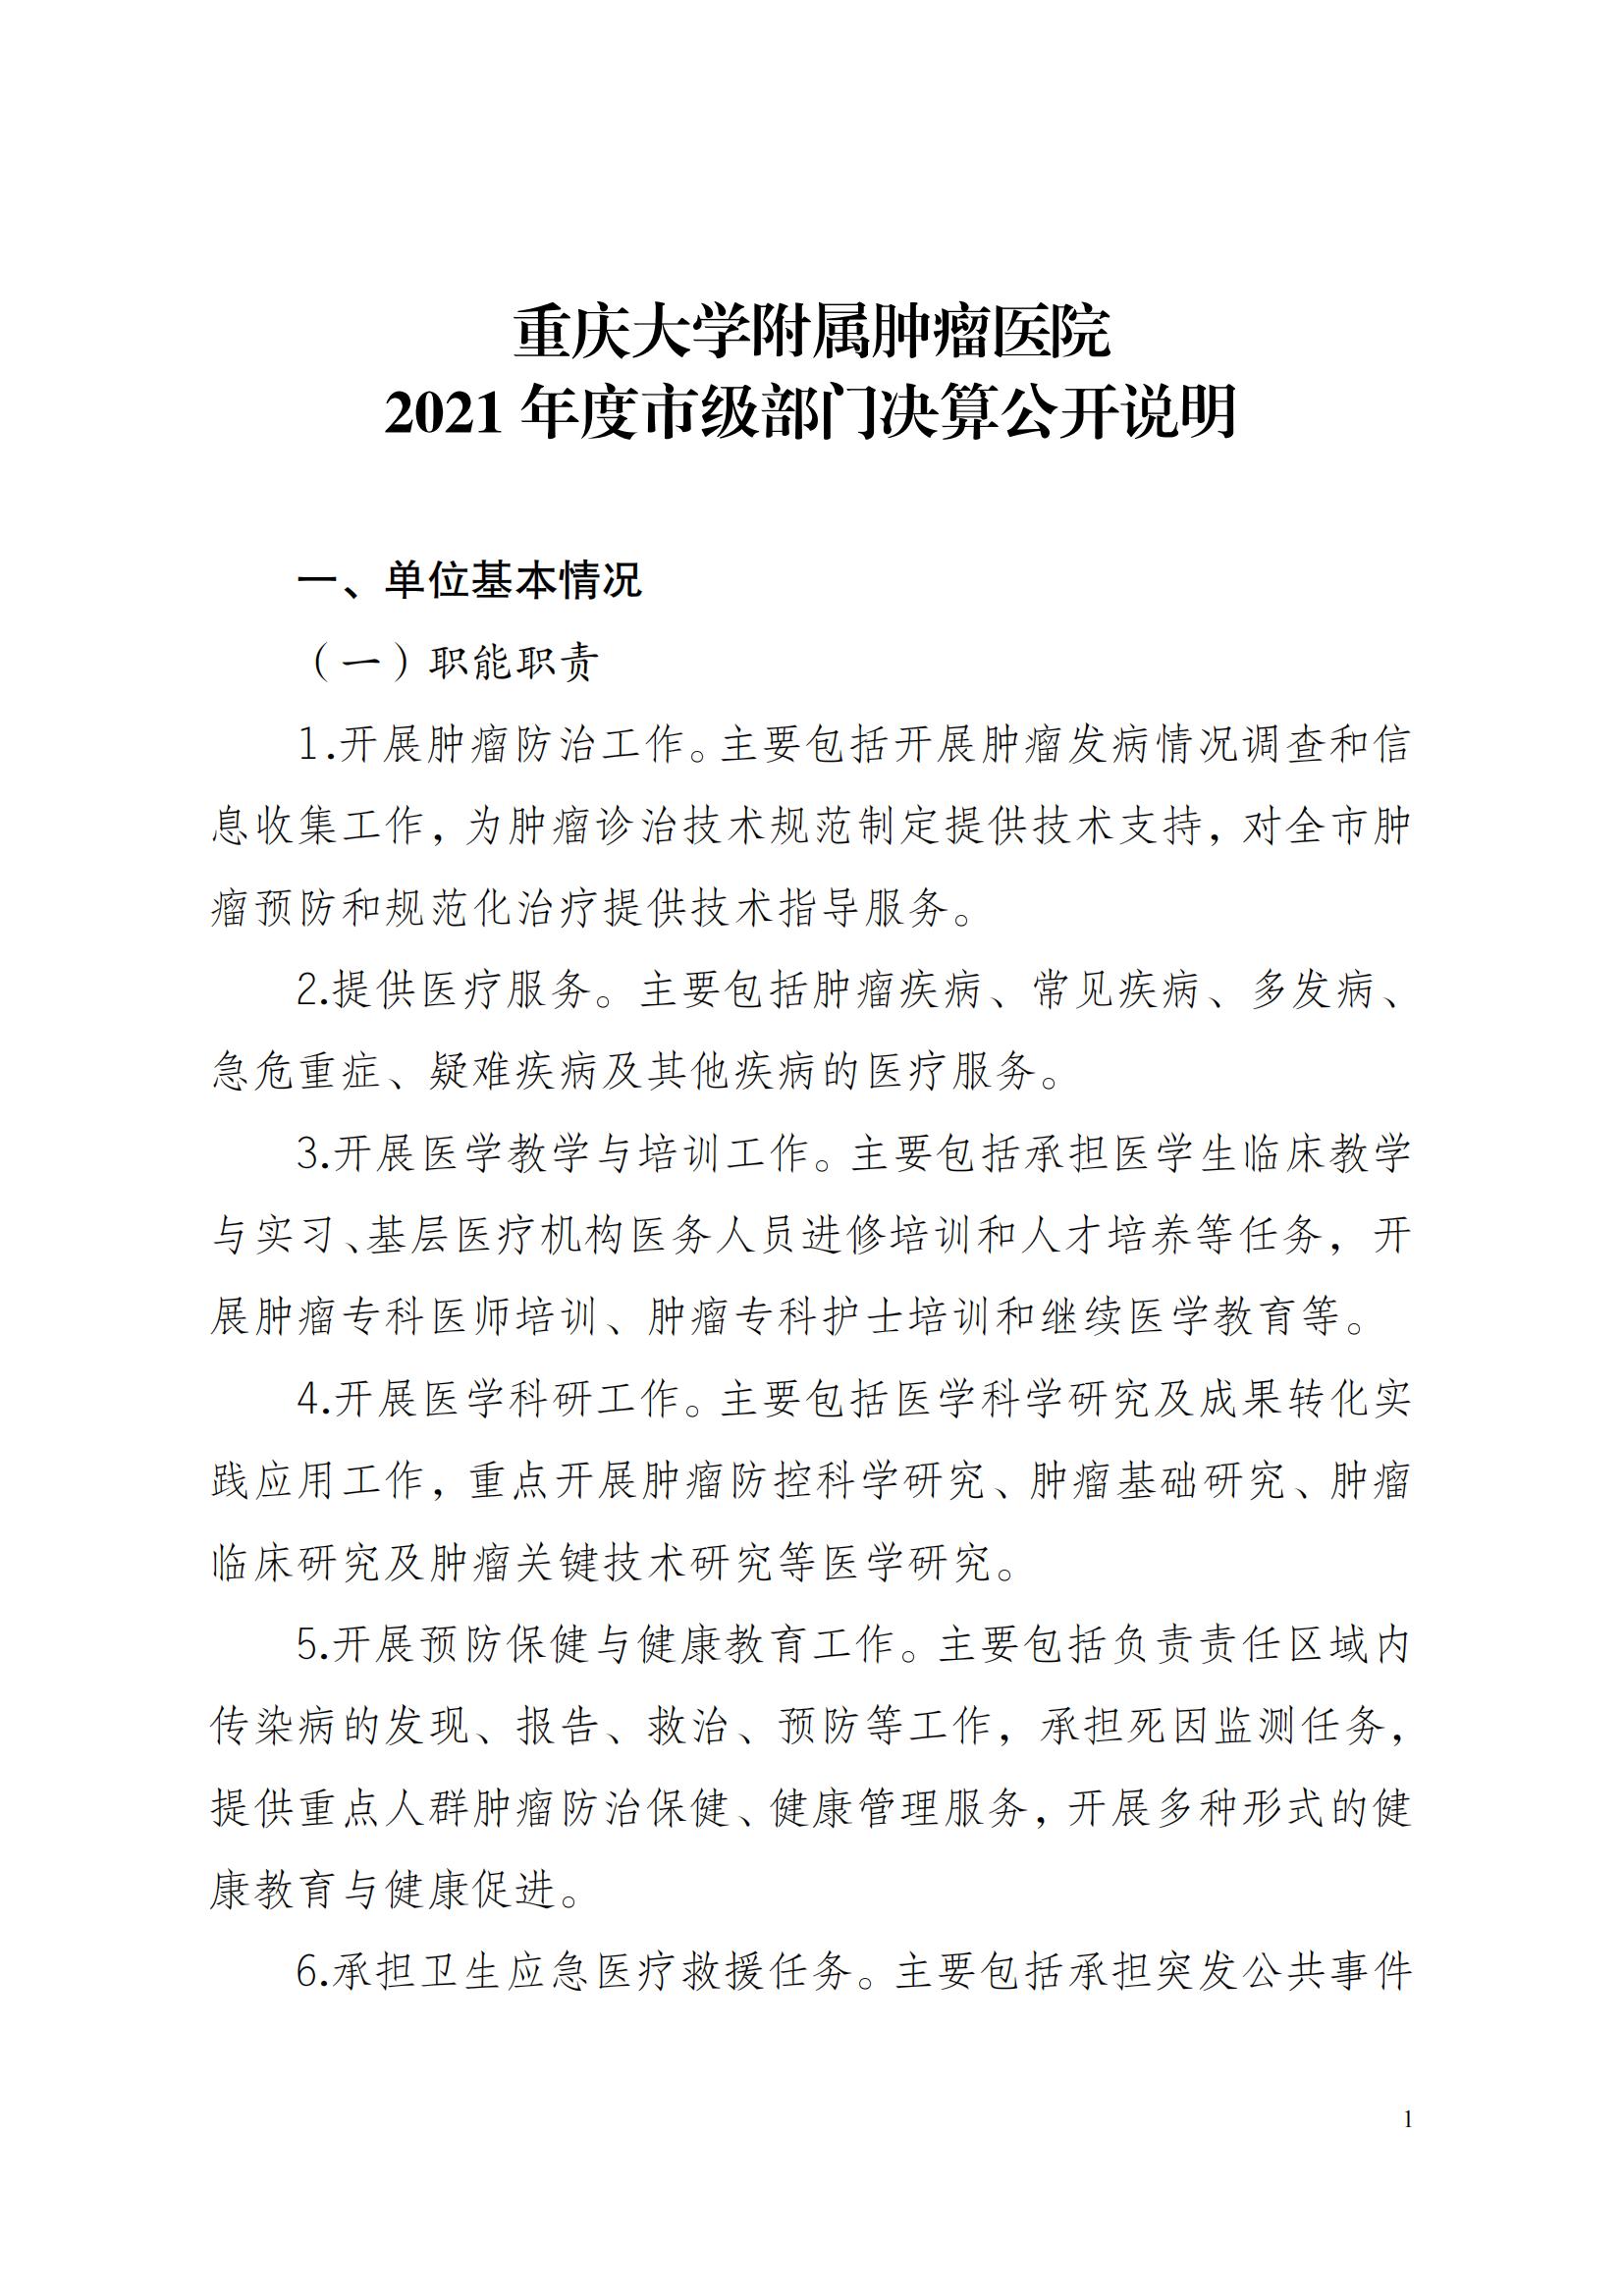 重庆大学附属肿瘤医院2021年度市级部门决算公开说明